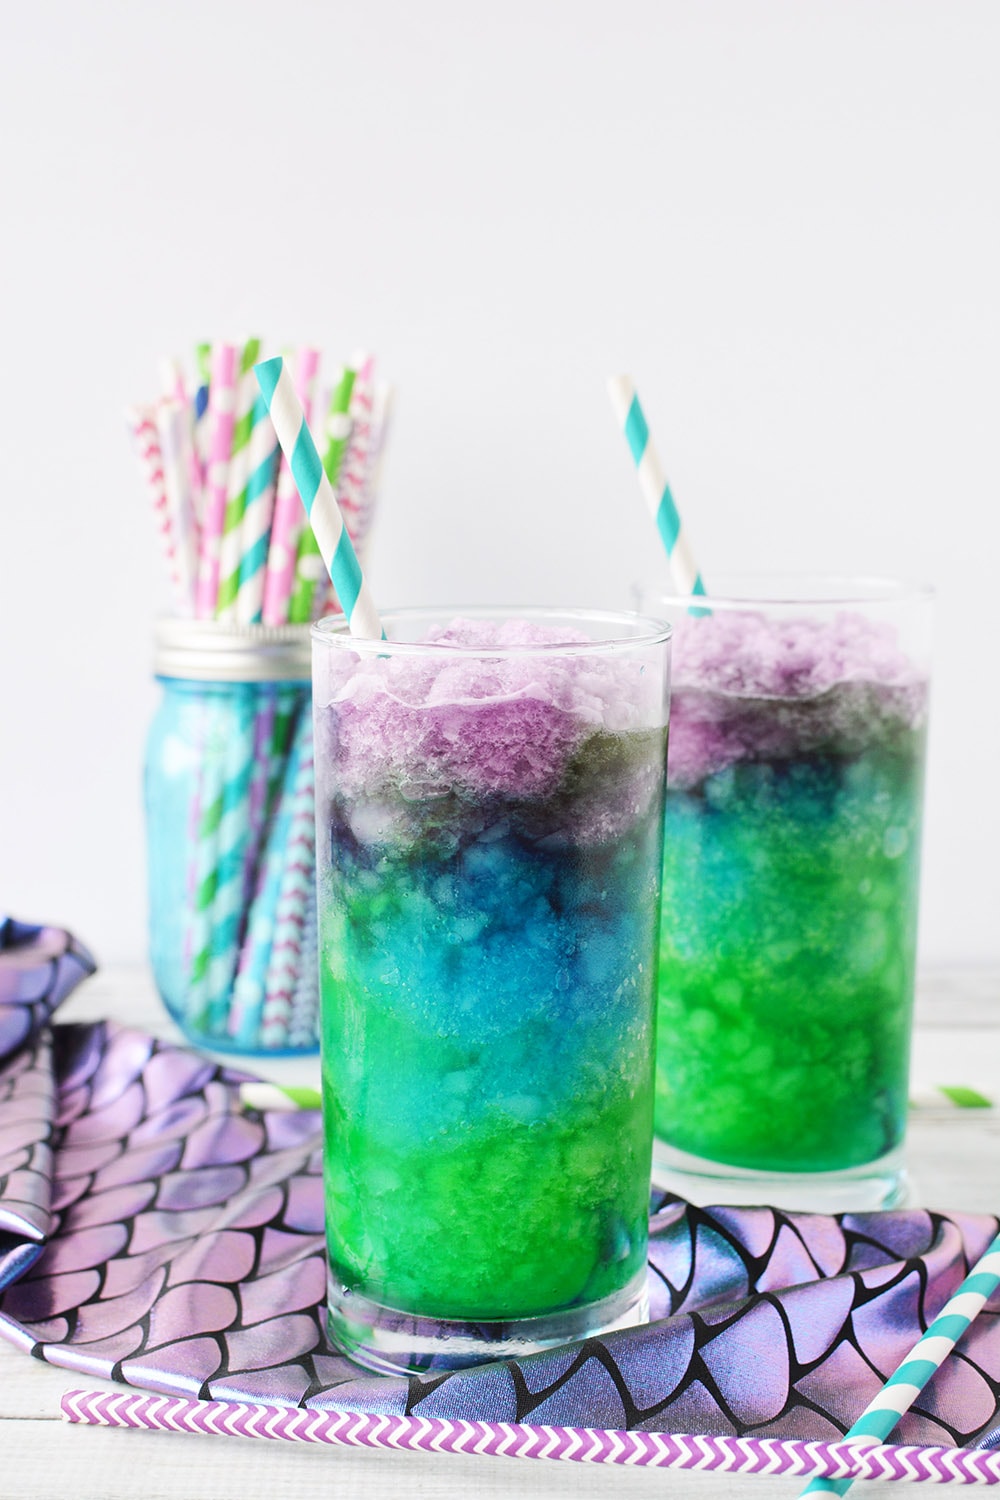 Mermaid lemonade icy drinks layered in glasses